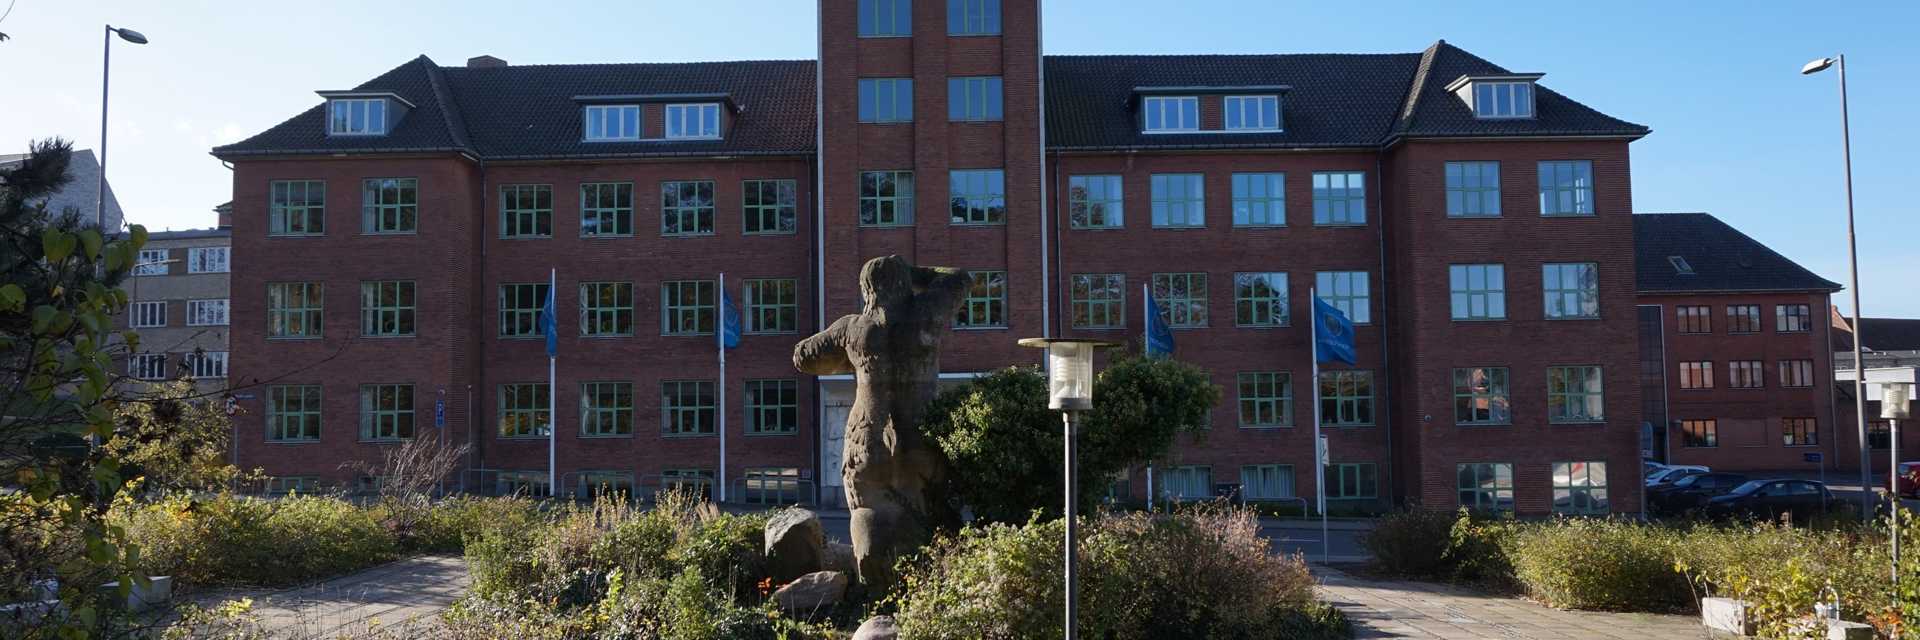 Rådhuset i Næstved, 2015, fotograf: NæstvedArkiverne